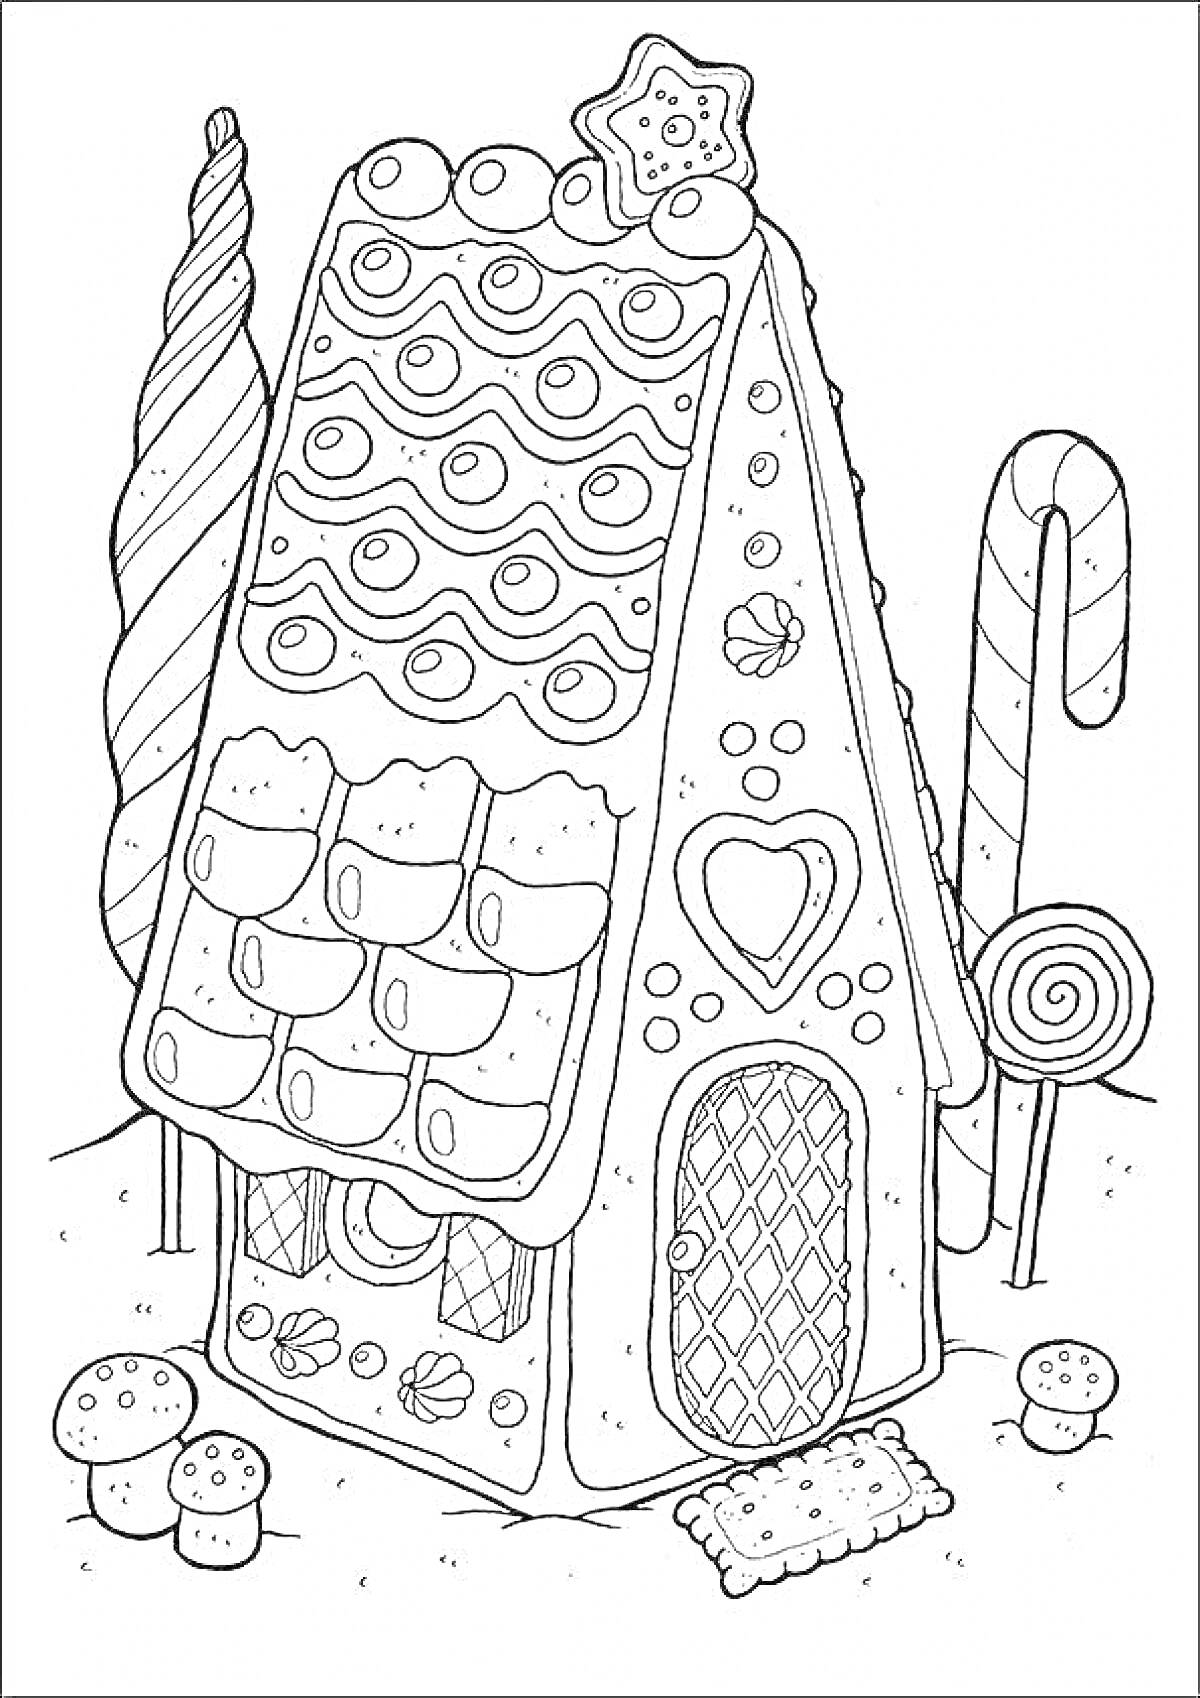 Раскраска Пряничный домик с дверью в форме сердца, звездочкой на крыше и украшениями в виде конфет, грибов и леденцов